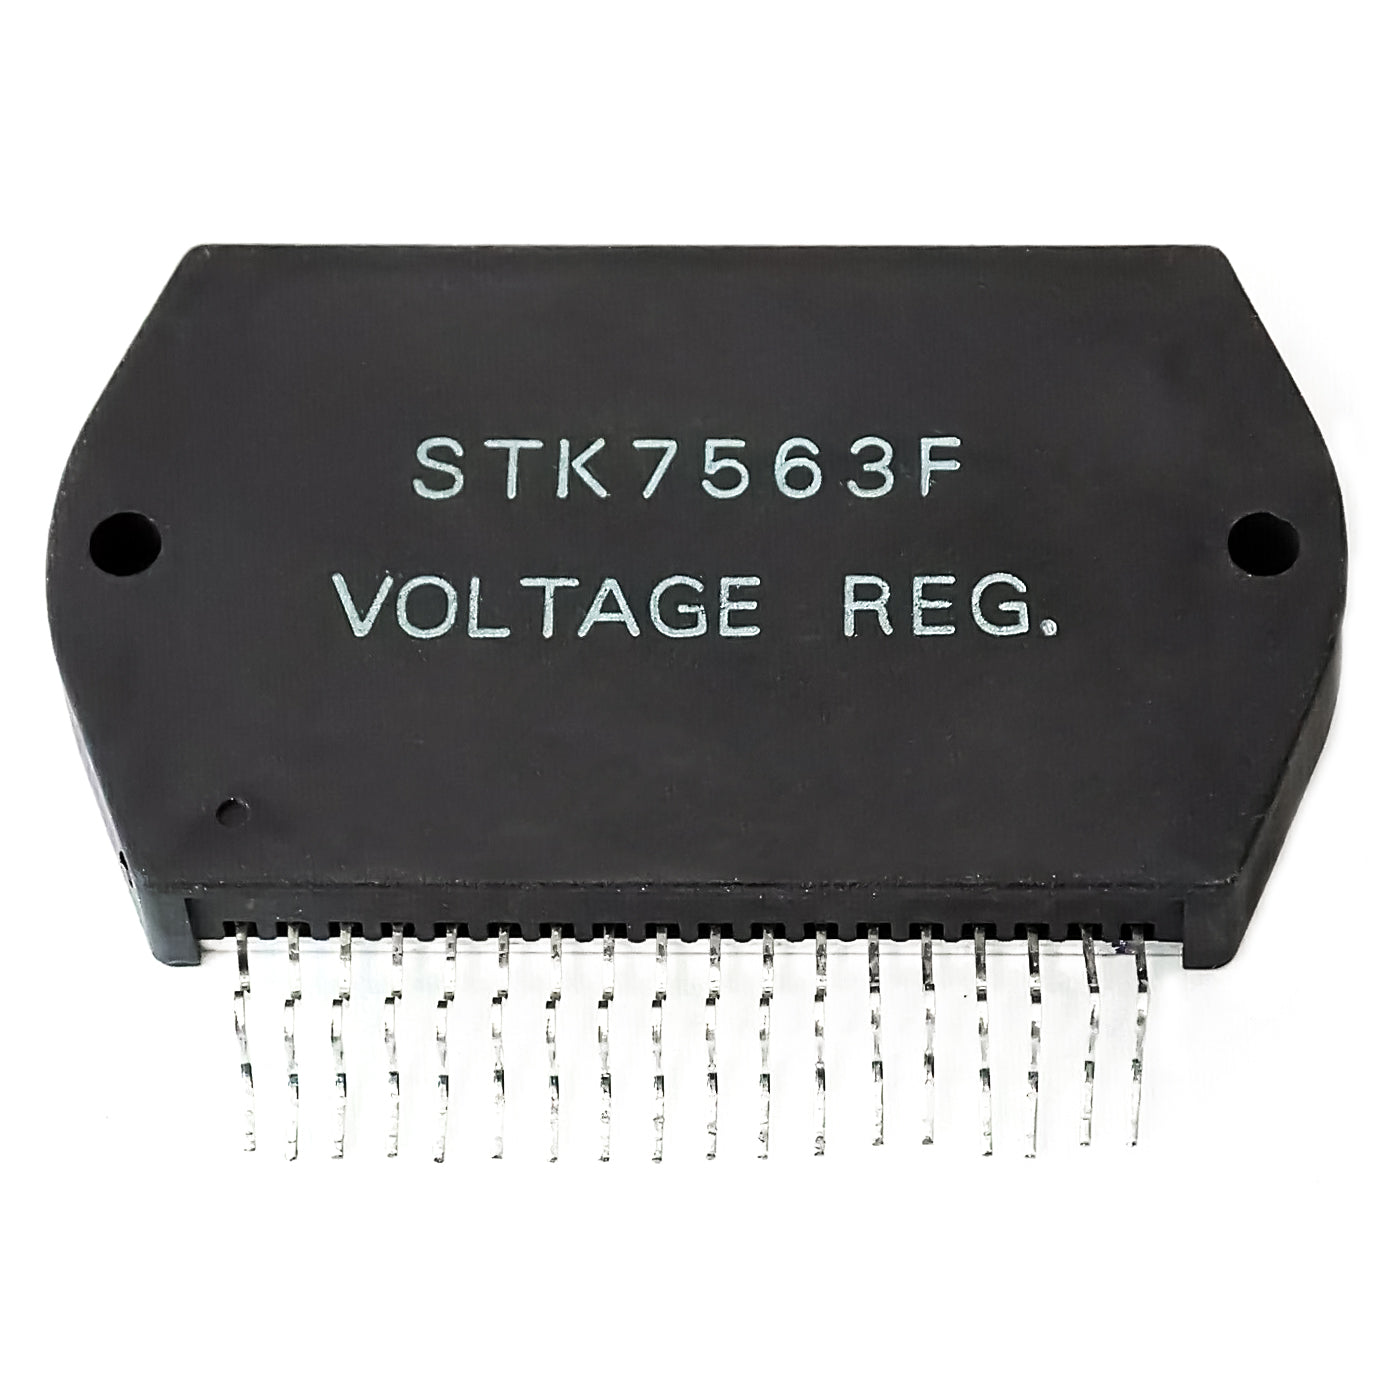 STK7563F componente elettronico, circuito integrato, transistor, voltage regulator, 18 contatti